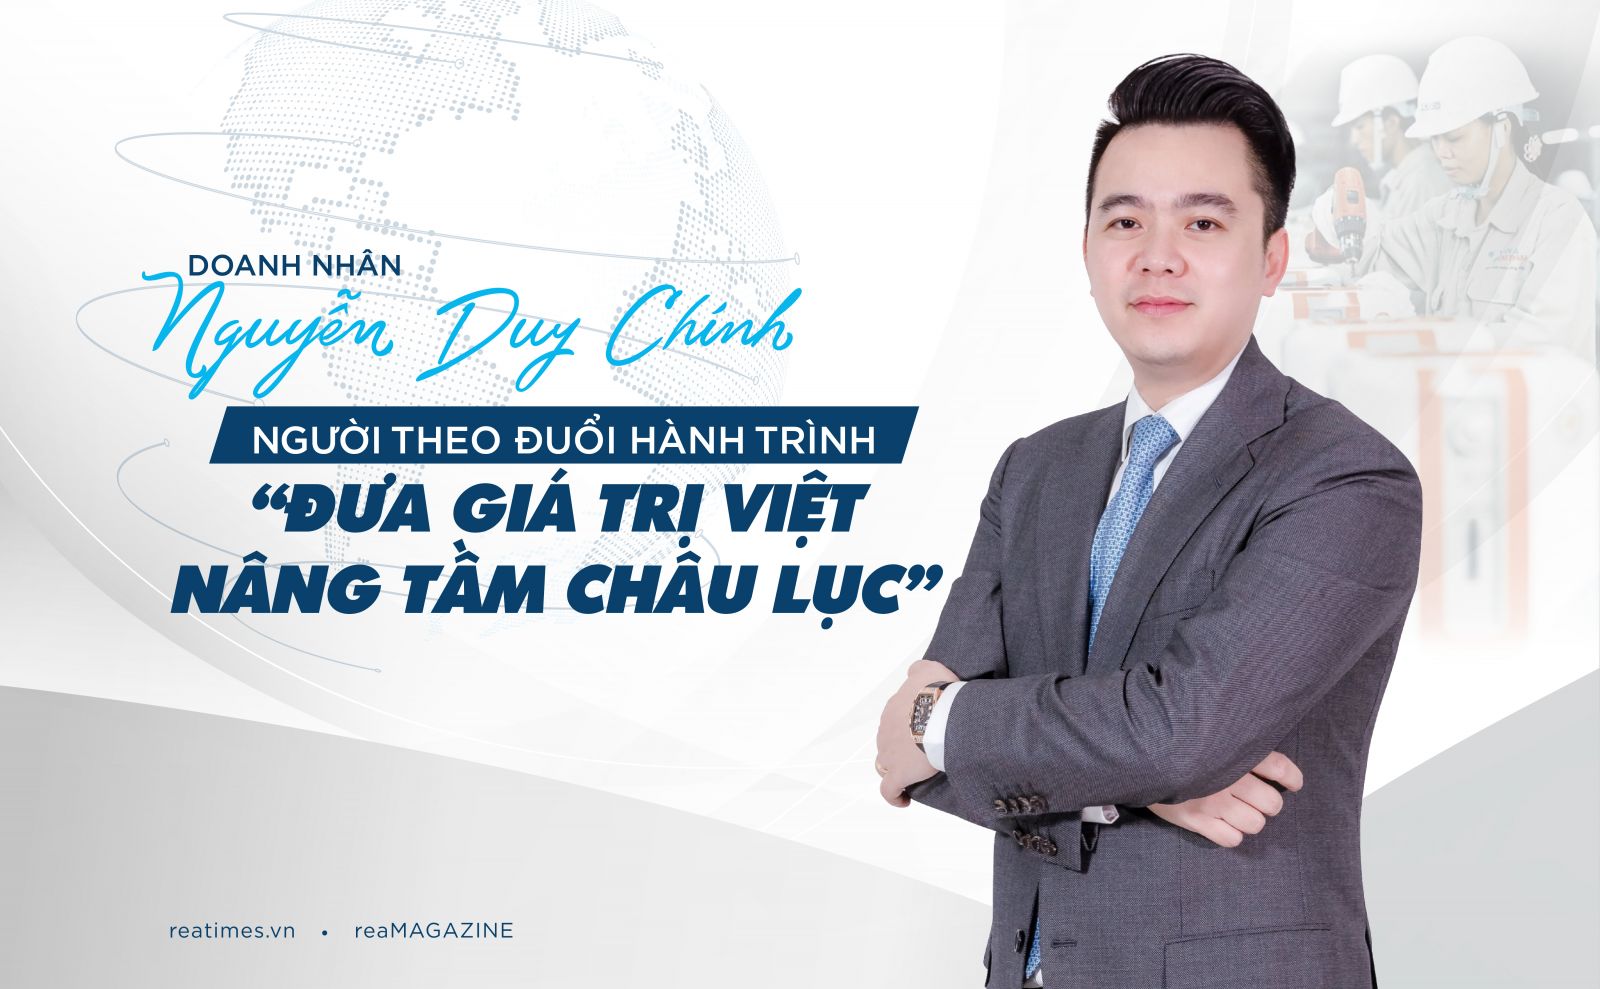 Doanh nhân Nguyễn Duy Chính: Người theo đuổi hành trình “đưa giá trị Việt nâng tầm châu lục”